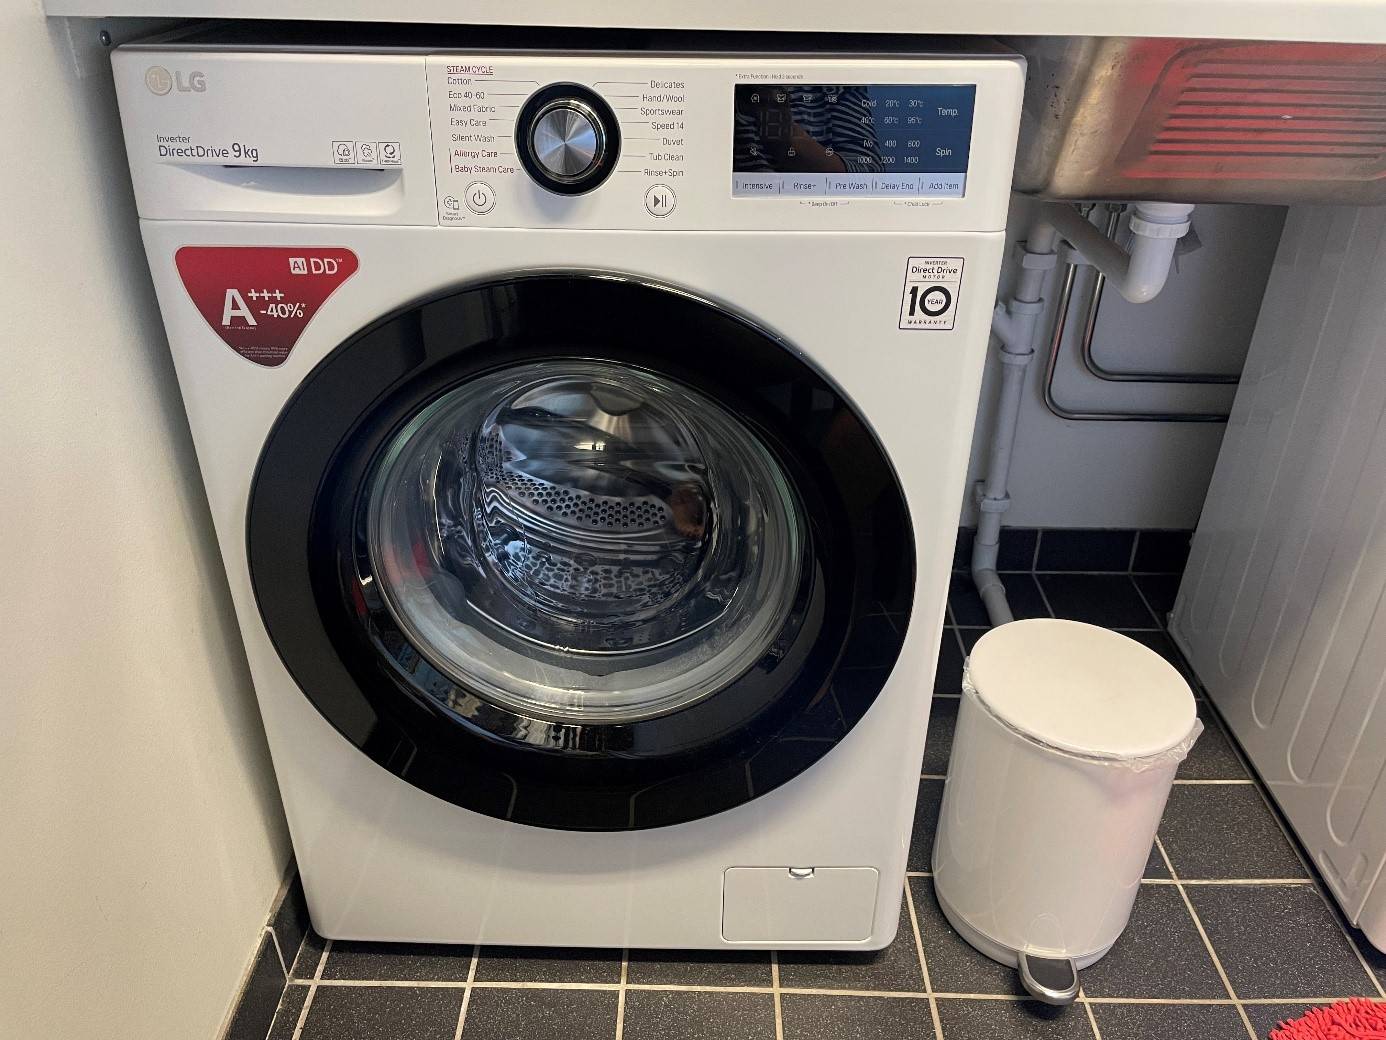 Billede fra test af vaskemaskine her ses bedst i test LG vaskemaskine